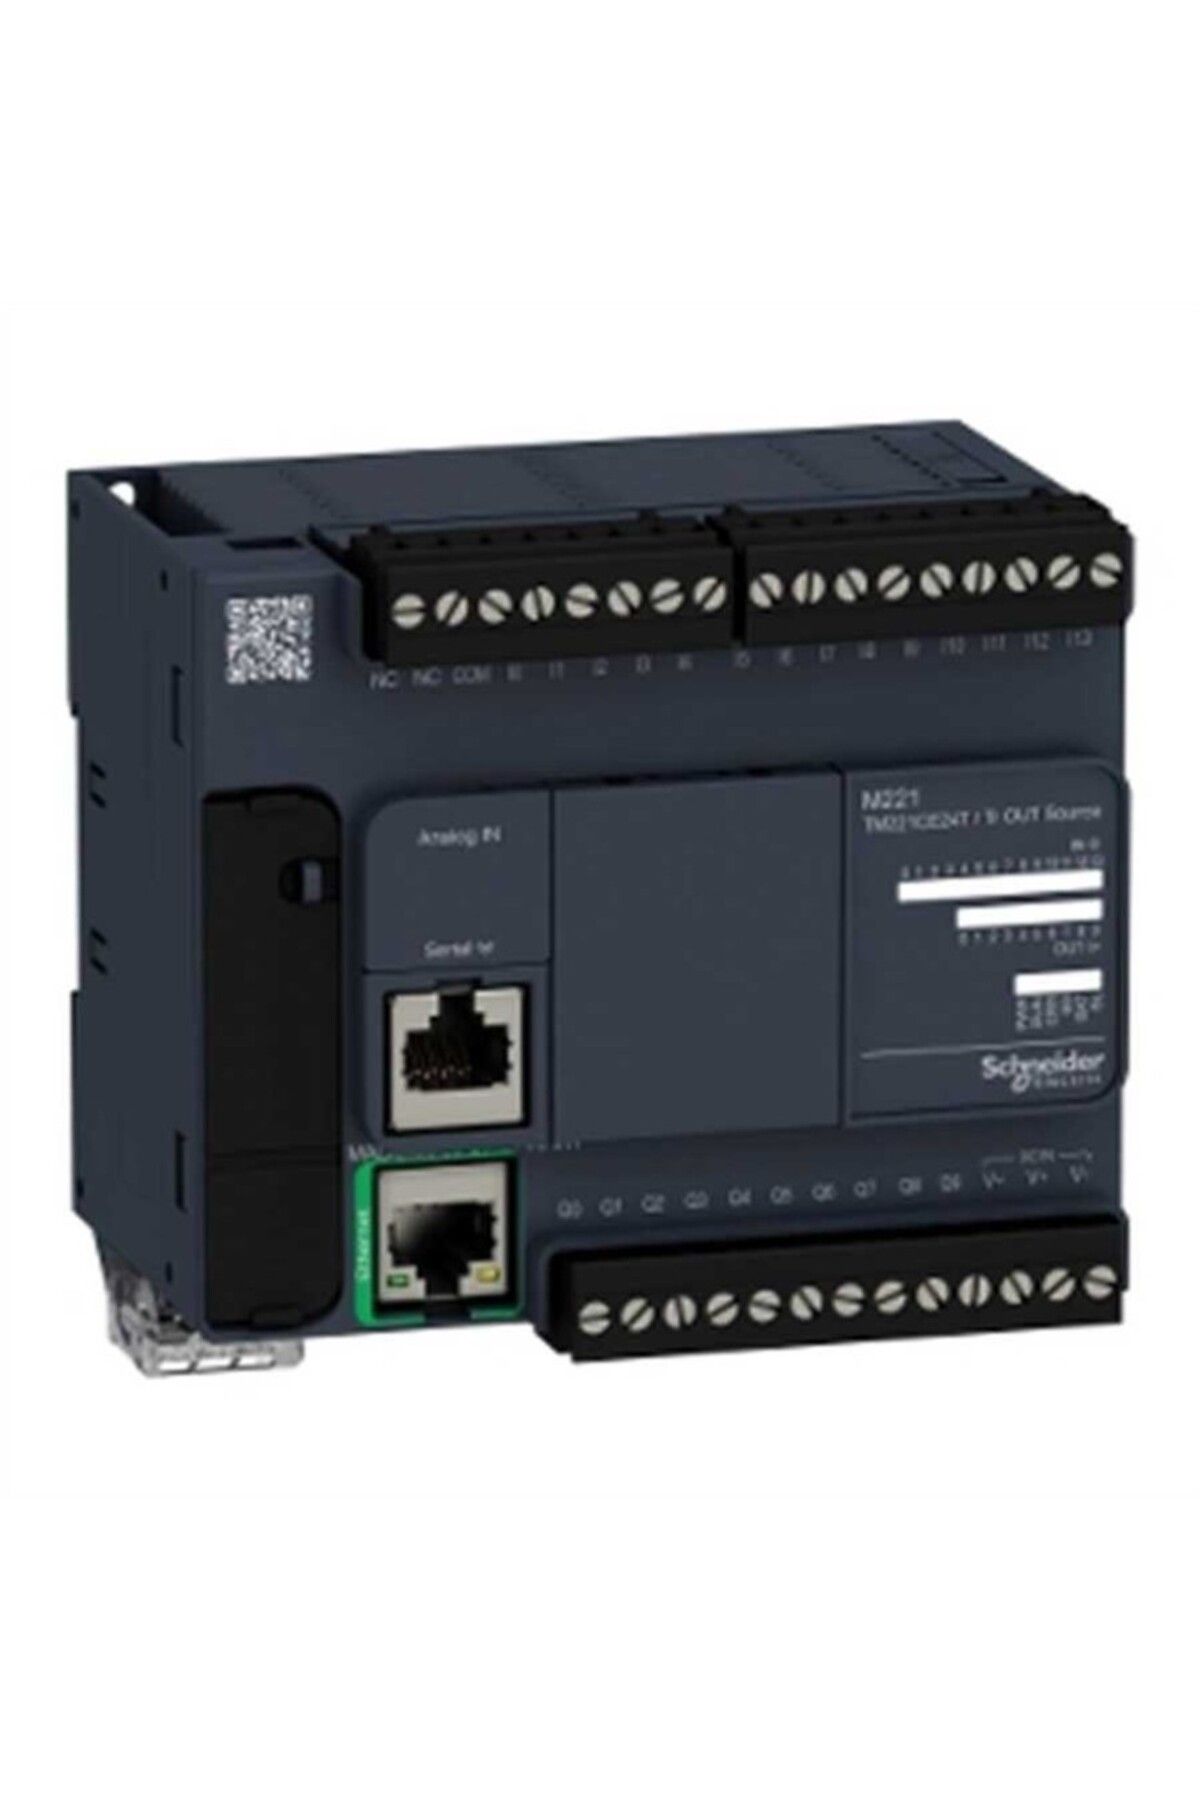 Schneider , Tm221ce24t , Kontrolör M221 24 Gç Transistör Pnp Ethernet